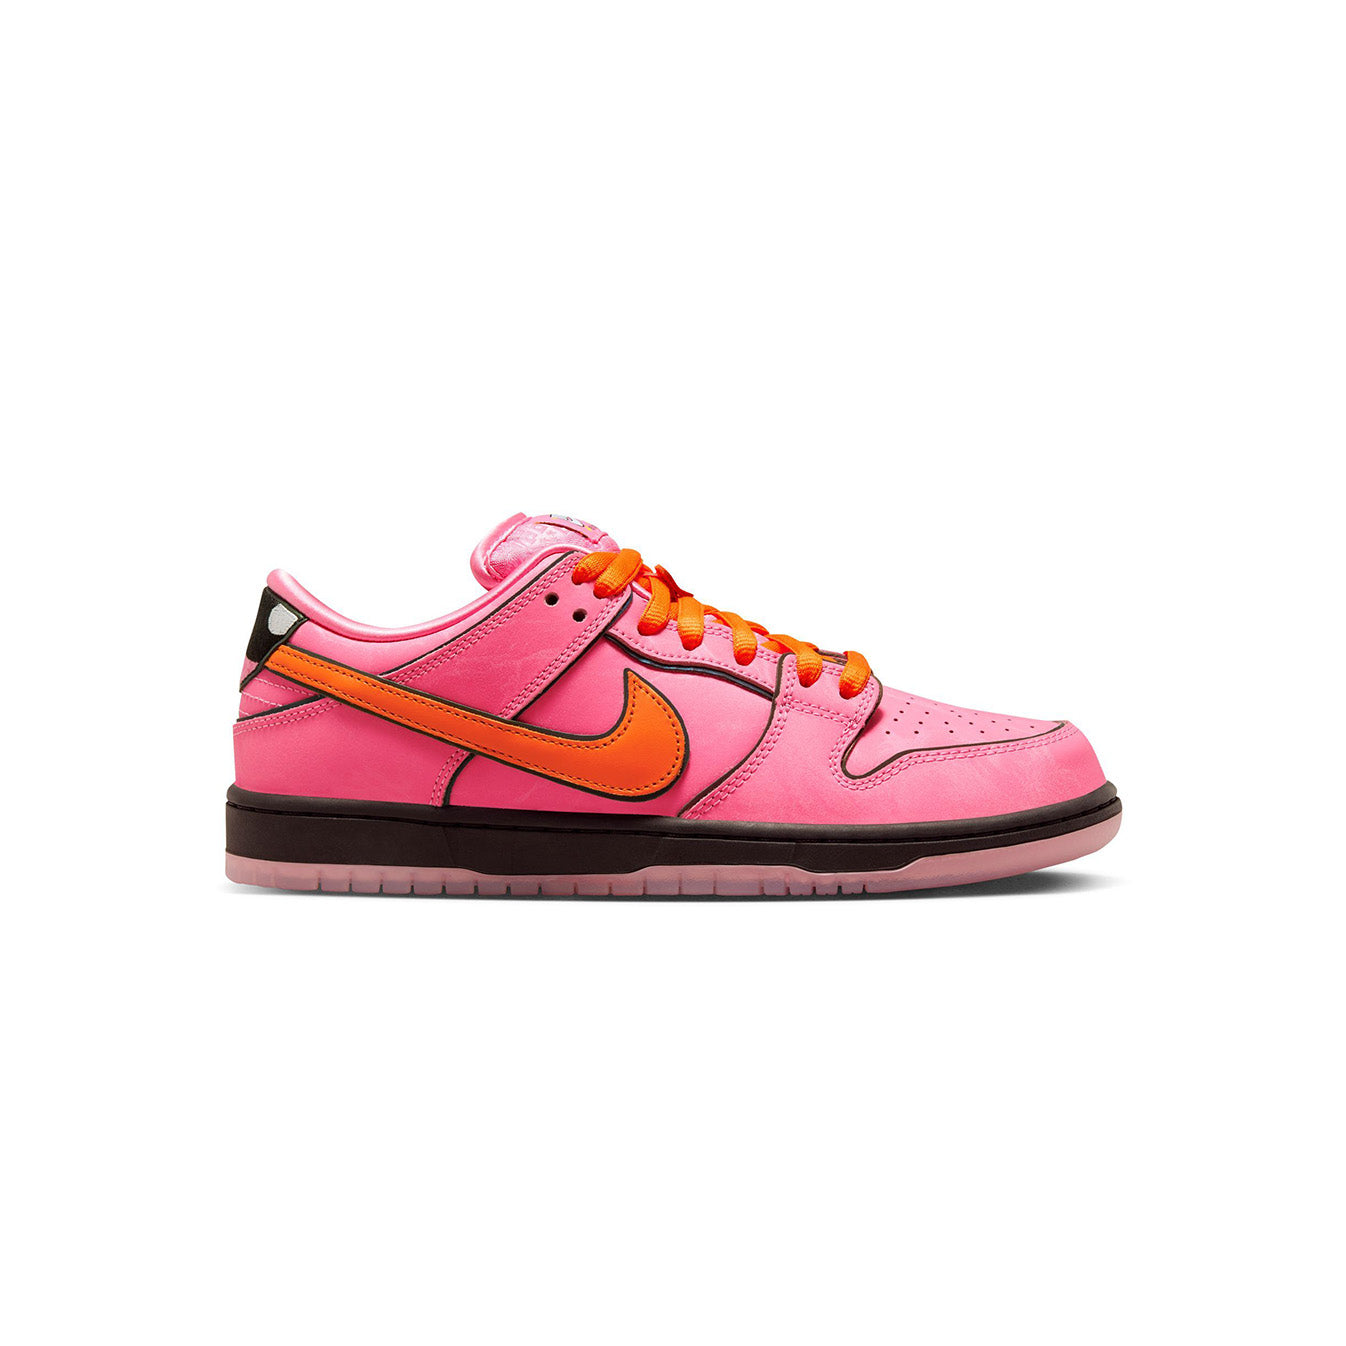 Powerpuff Girls x Nike SB 'Blossom' – CNCPTS